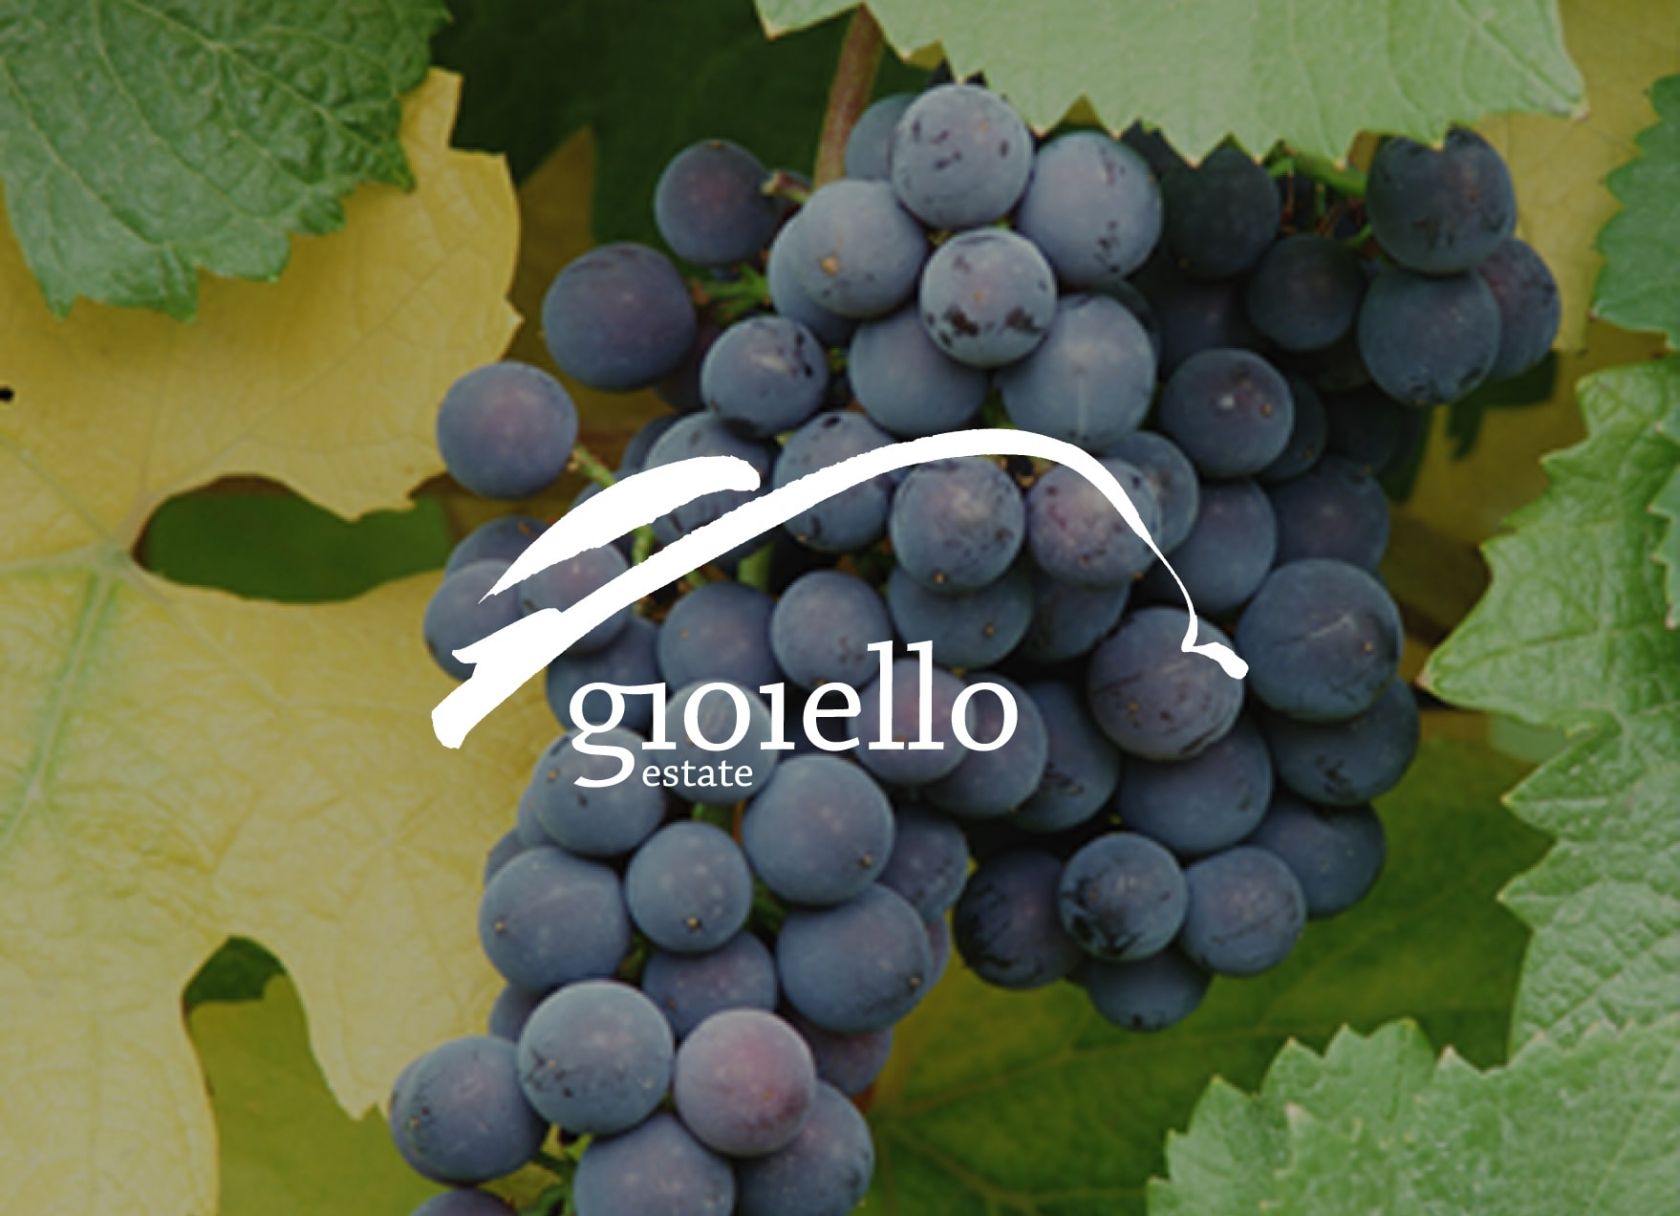 gioiello estate logo in front of wine grapes